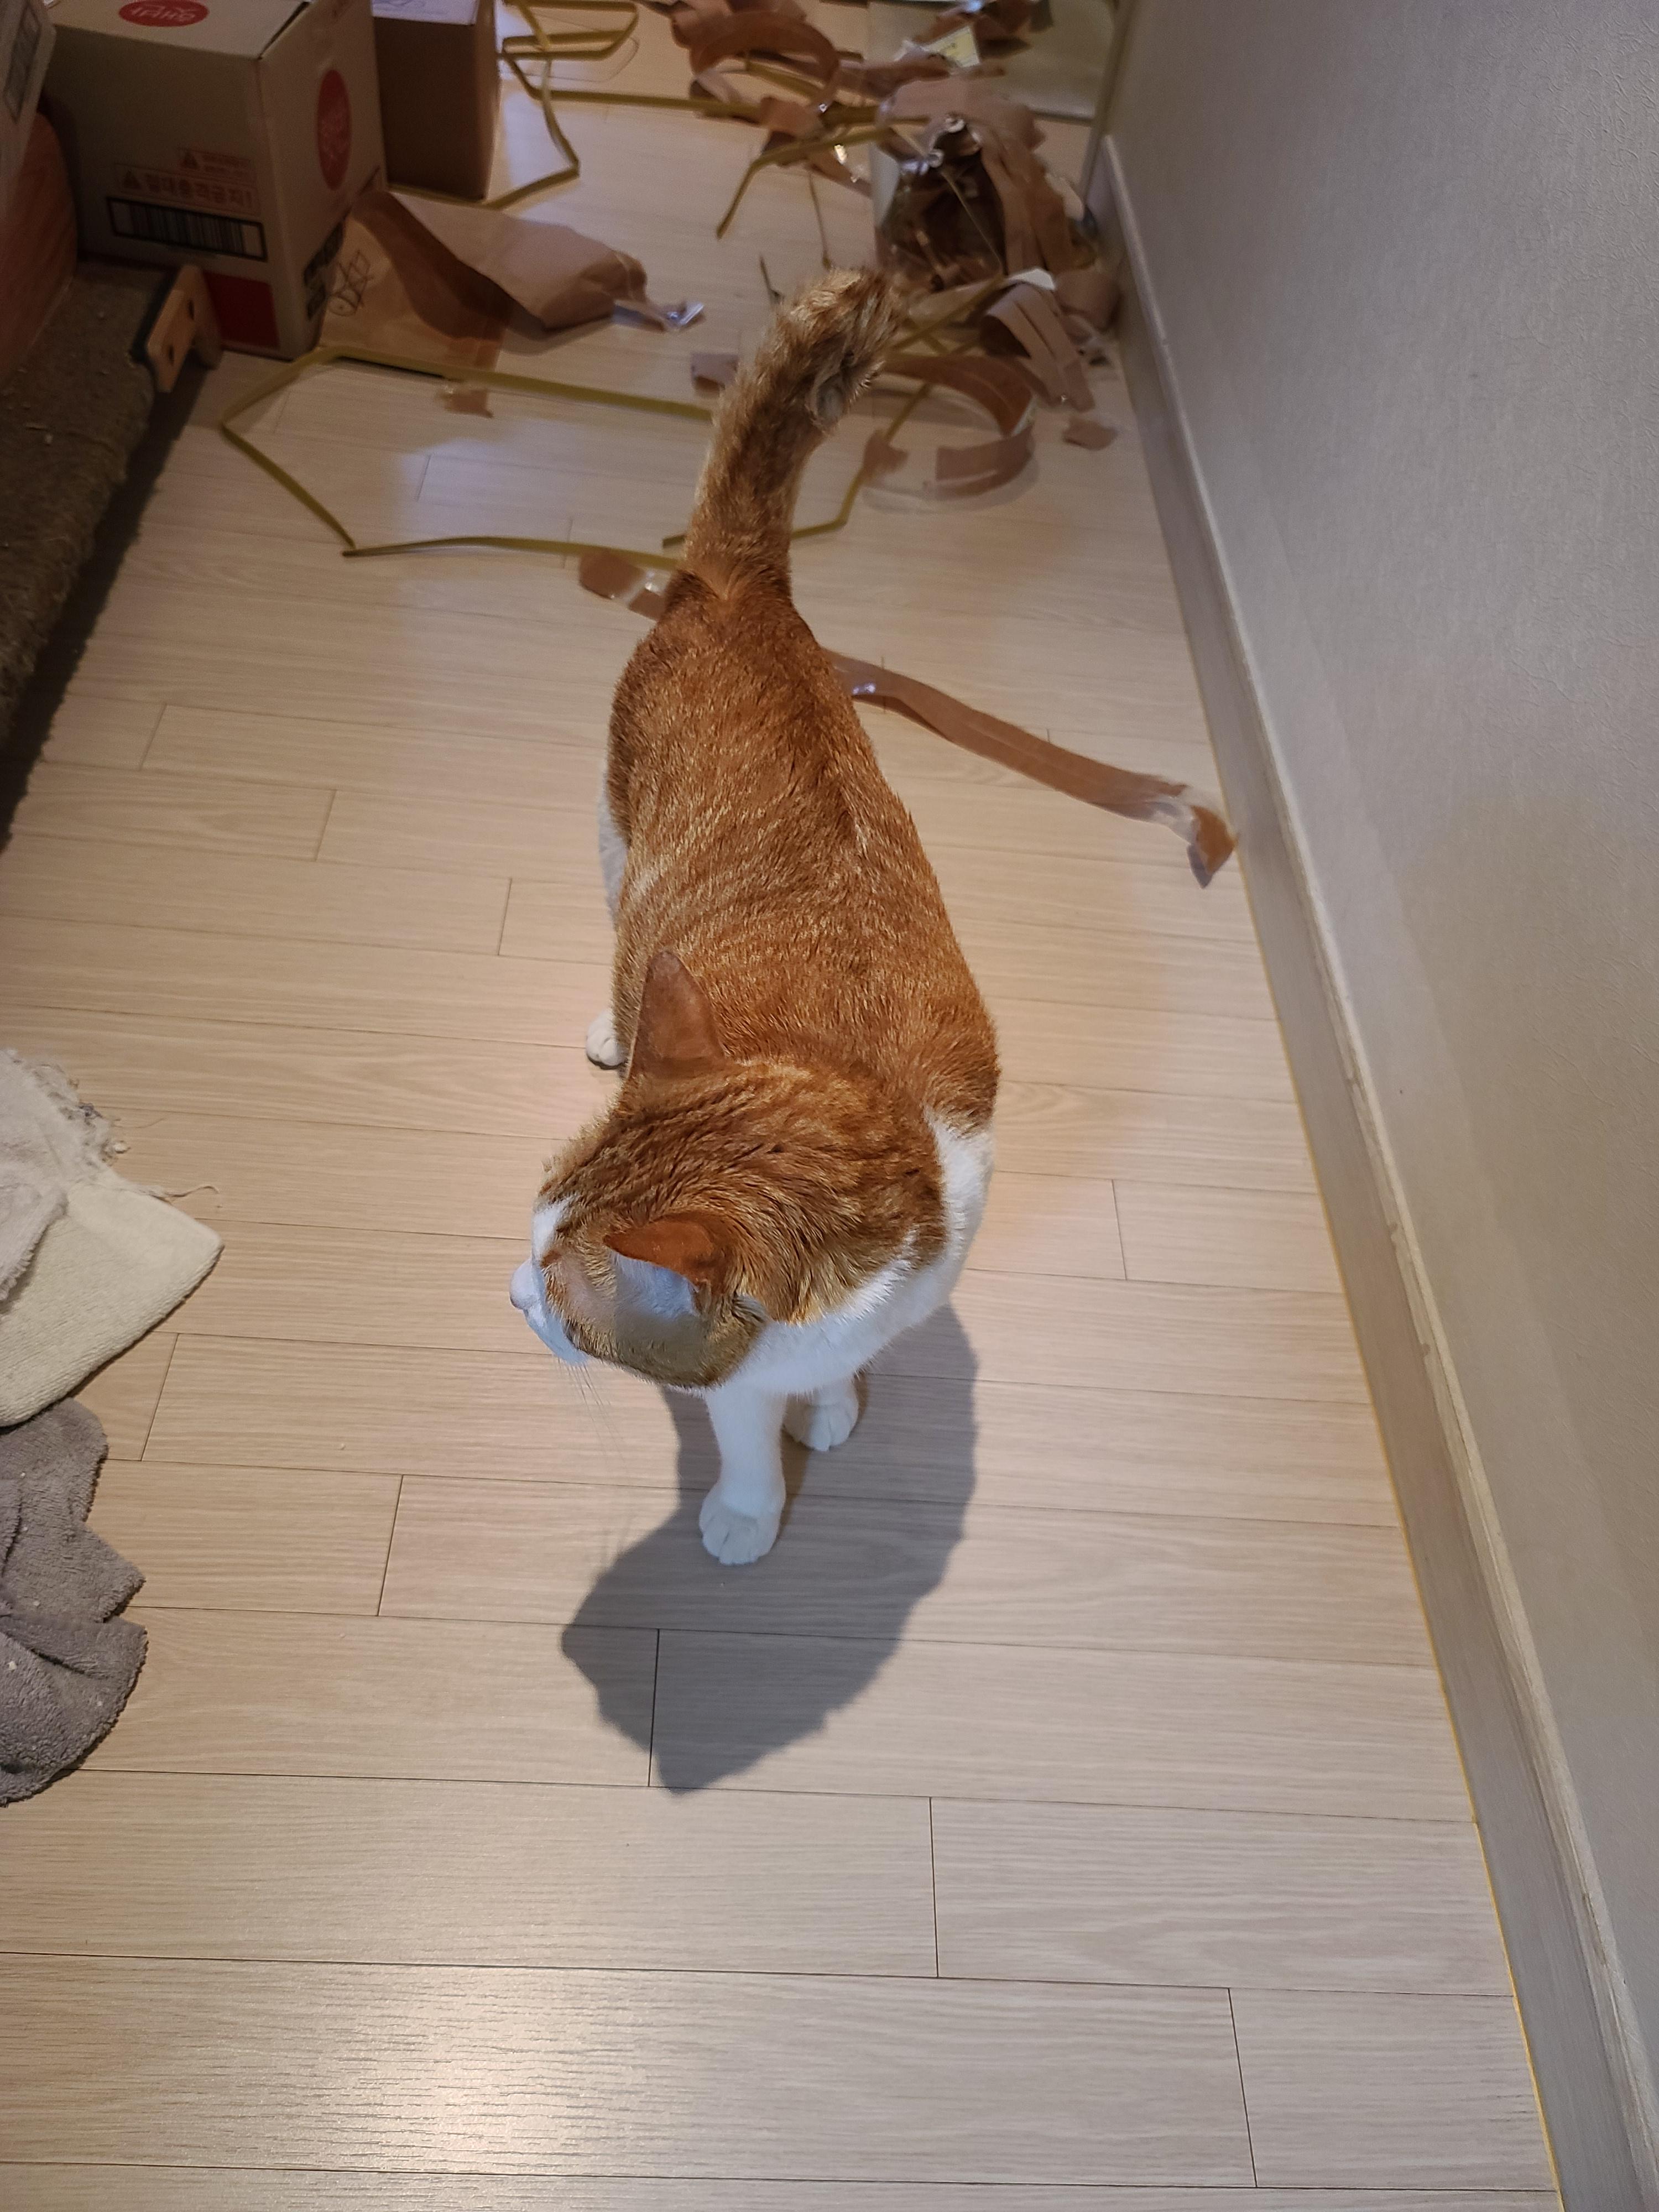 5월 1일 고양이들 모래 화장실전체갈이!(feat. 바우젠)